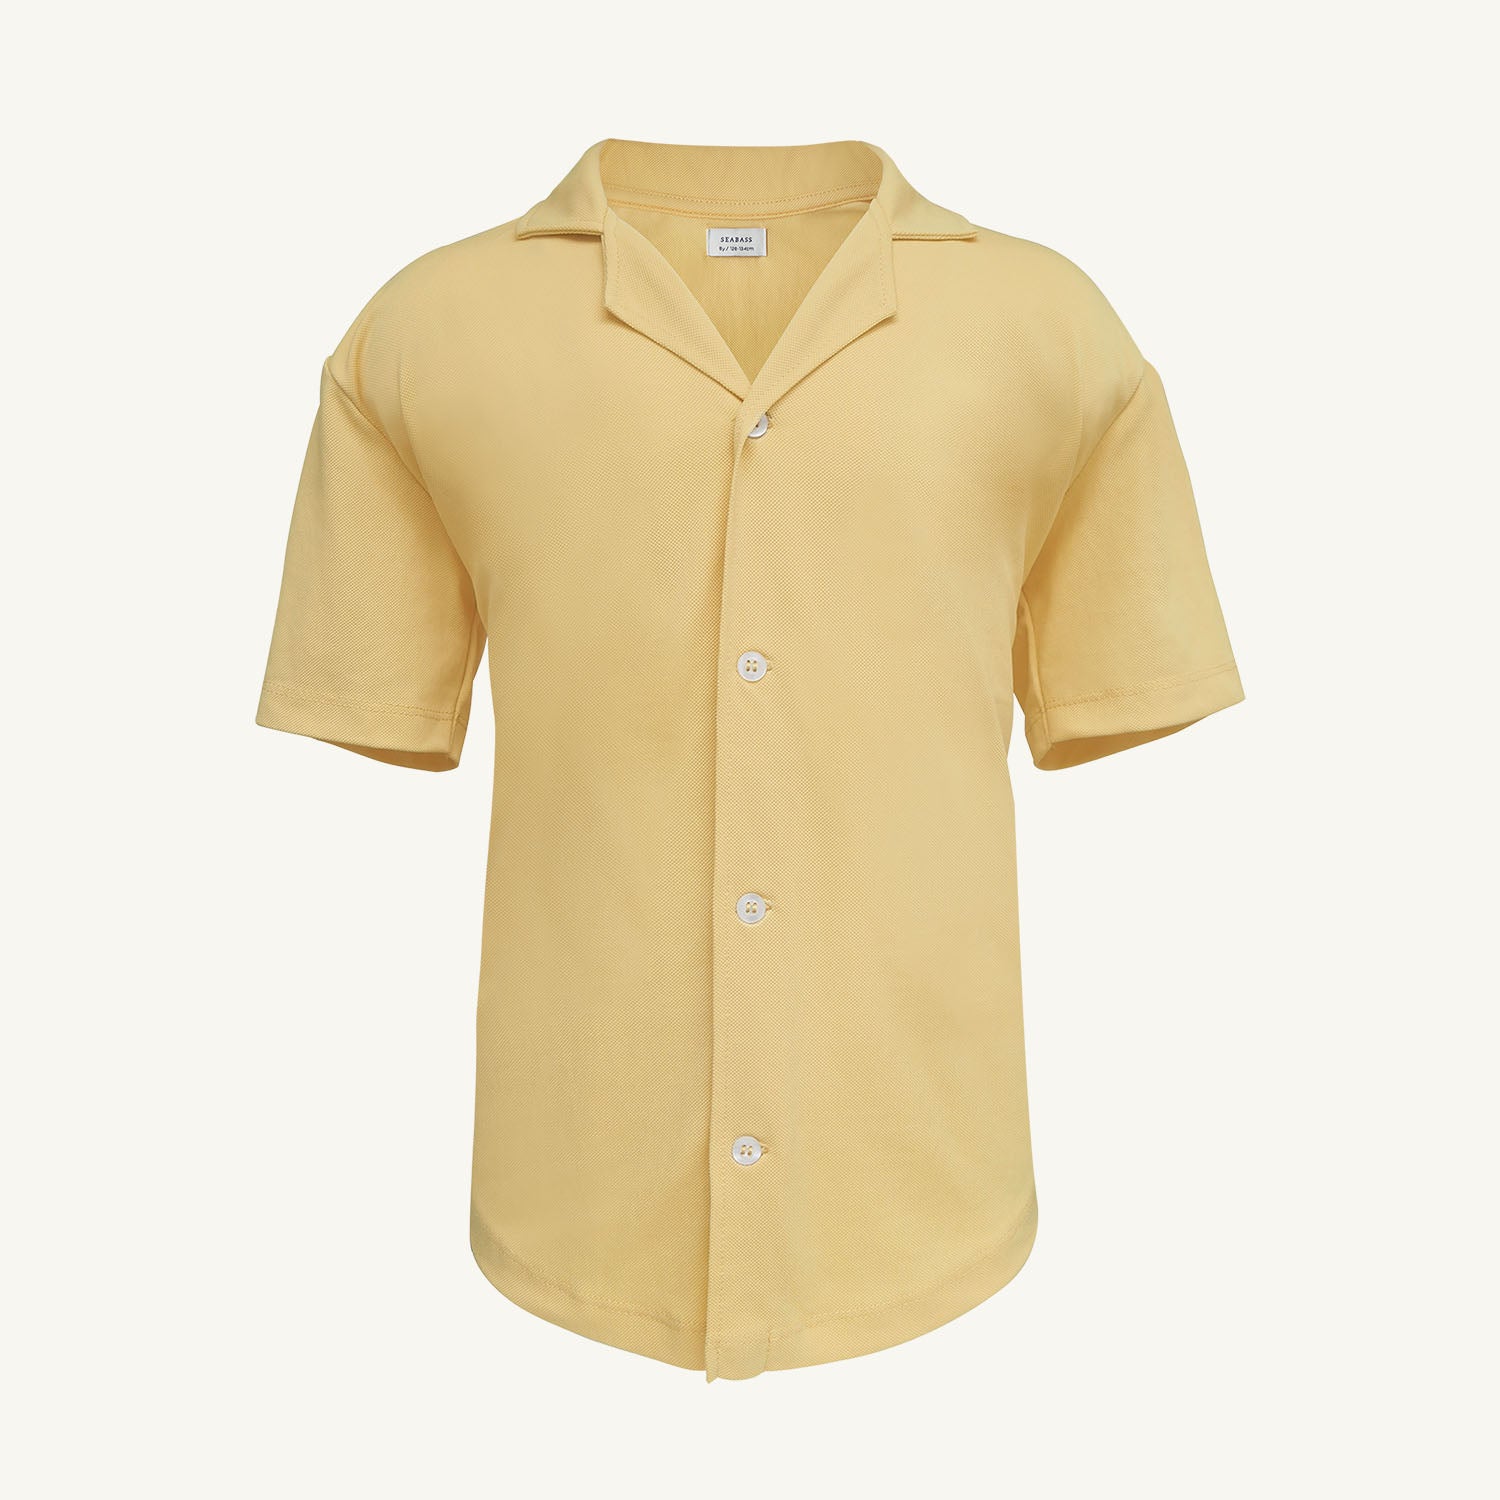 Männer UV Hemd Kurzarm mit UV-Schutz - Weiches Gelb